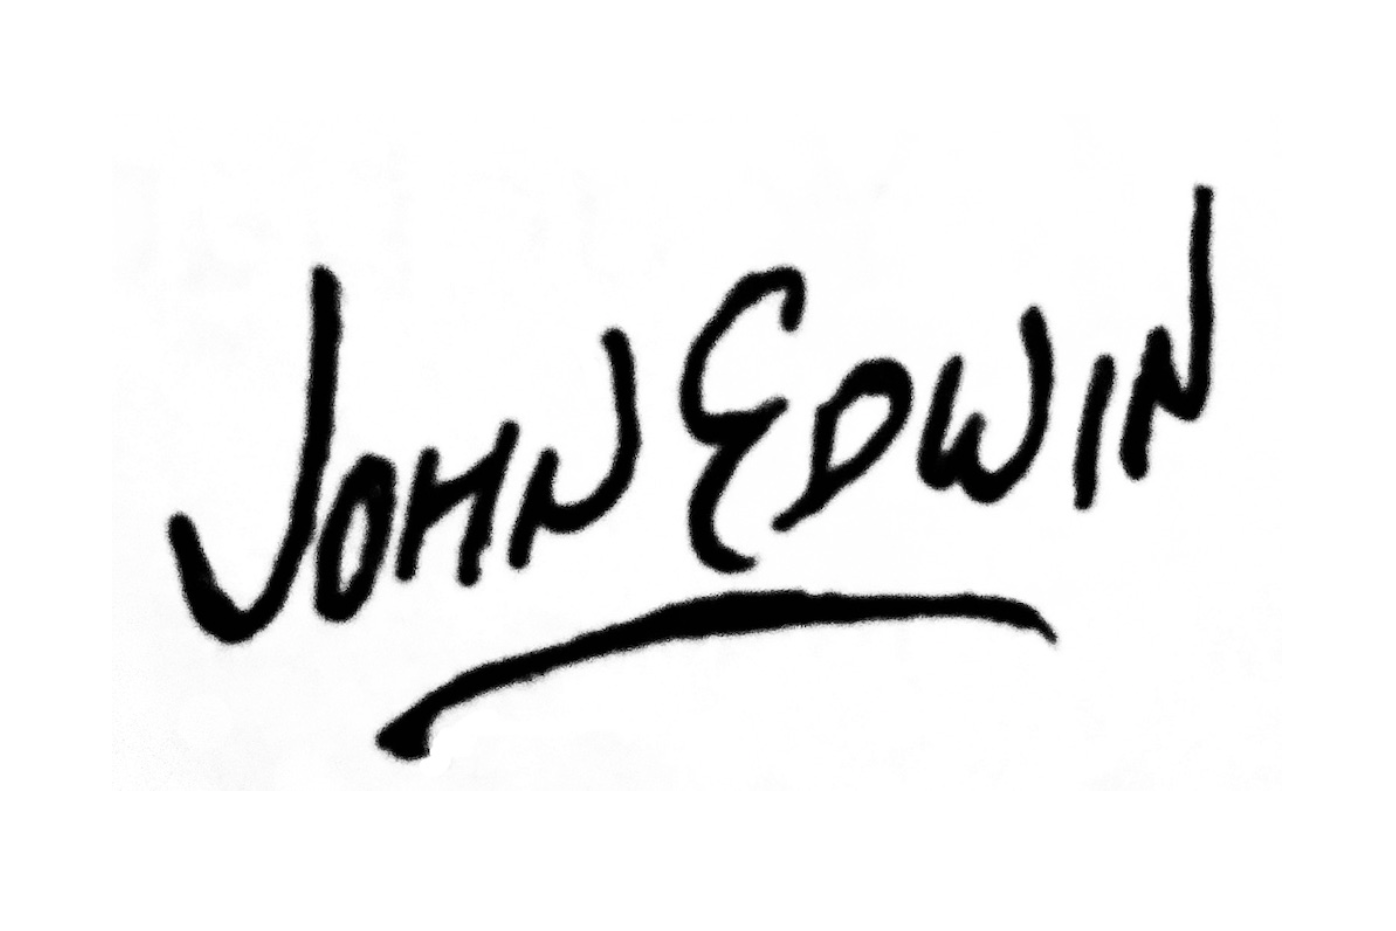 John Edwin / John Edwin Music